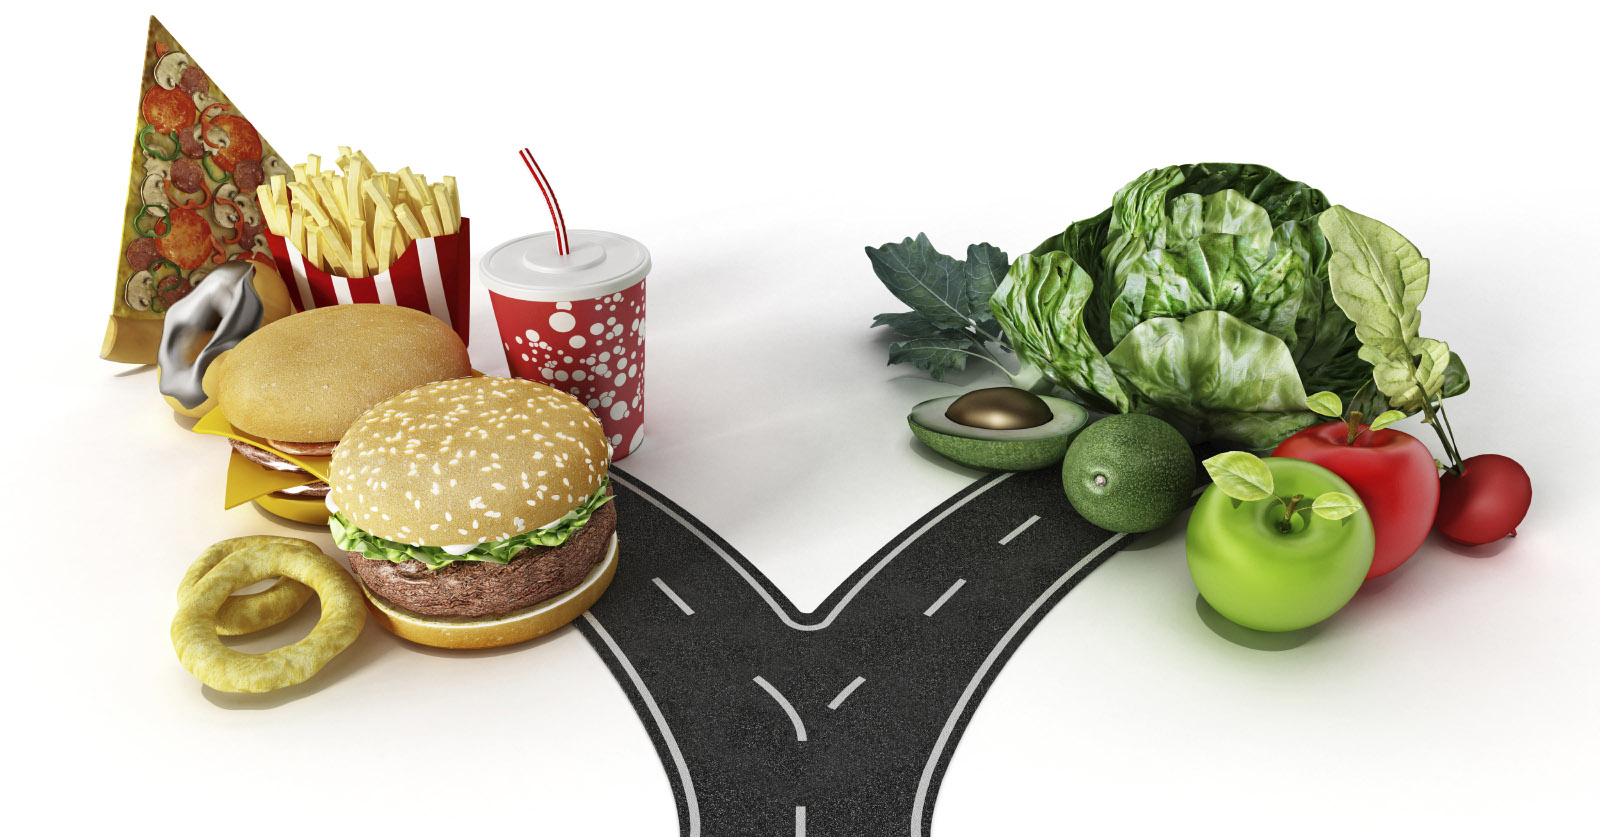 762-junk-food-vs-healthy-food.jpg